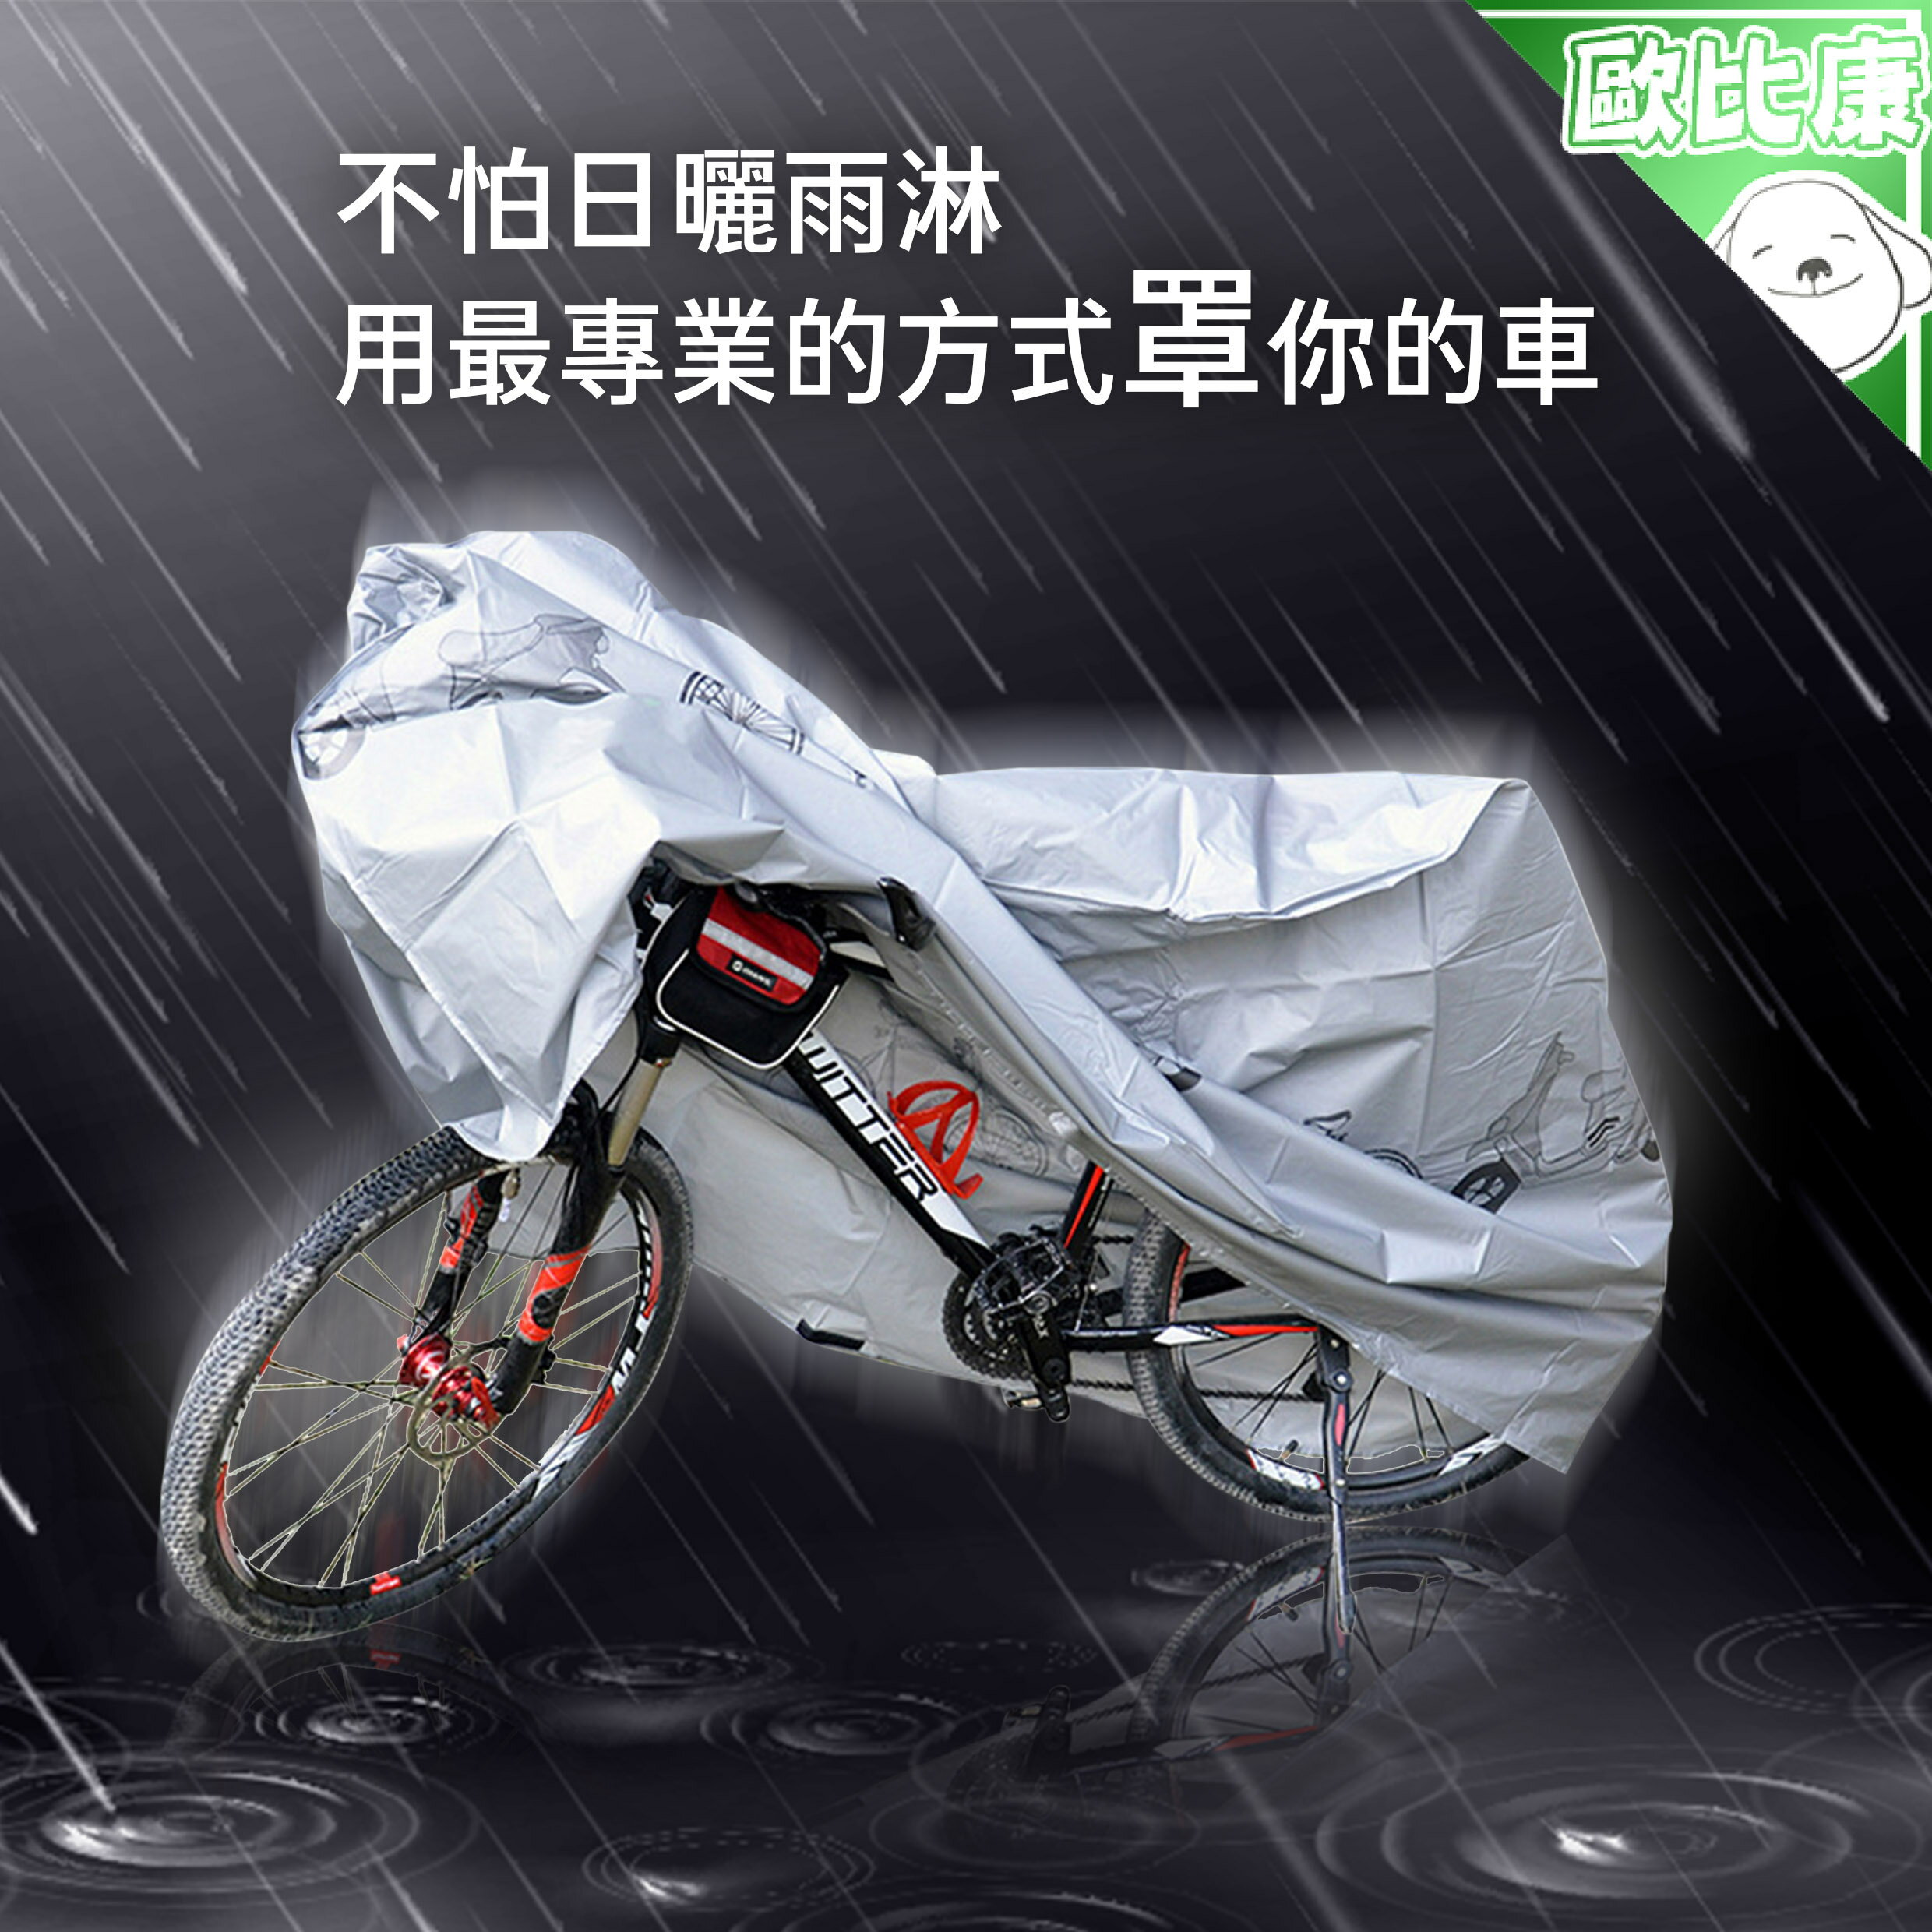 【防風日曬雨淋】自行車立體防雨罩 S 200*100cm 自行車防塵罩 防塵套 機車防塵罩 機車套 腳踏車罩 遮陽罩